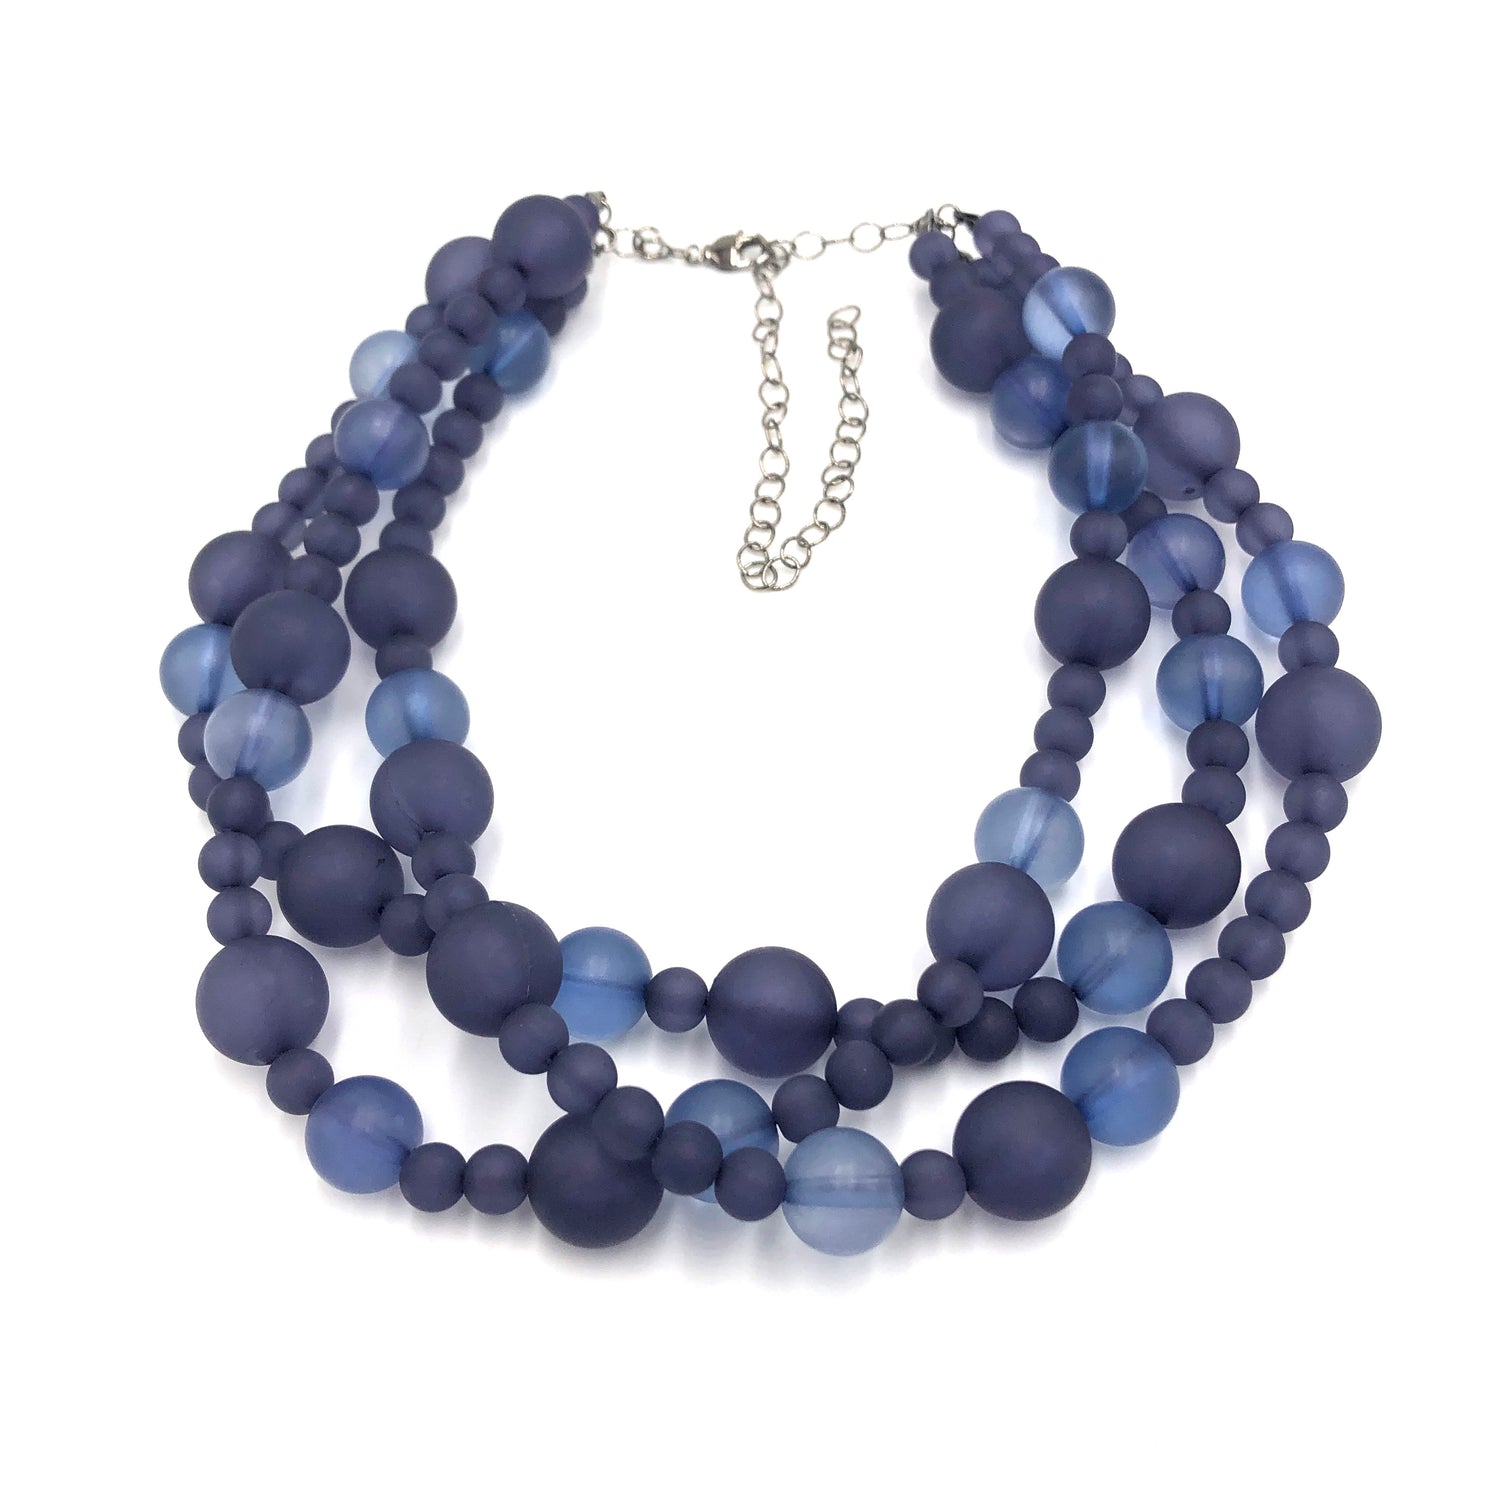 dark blue necklace